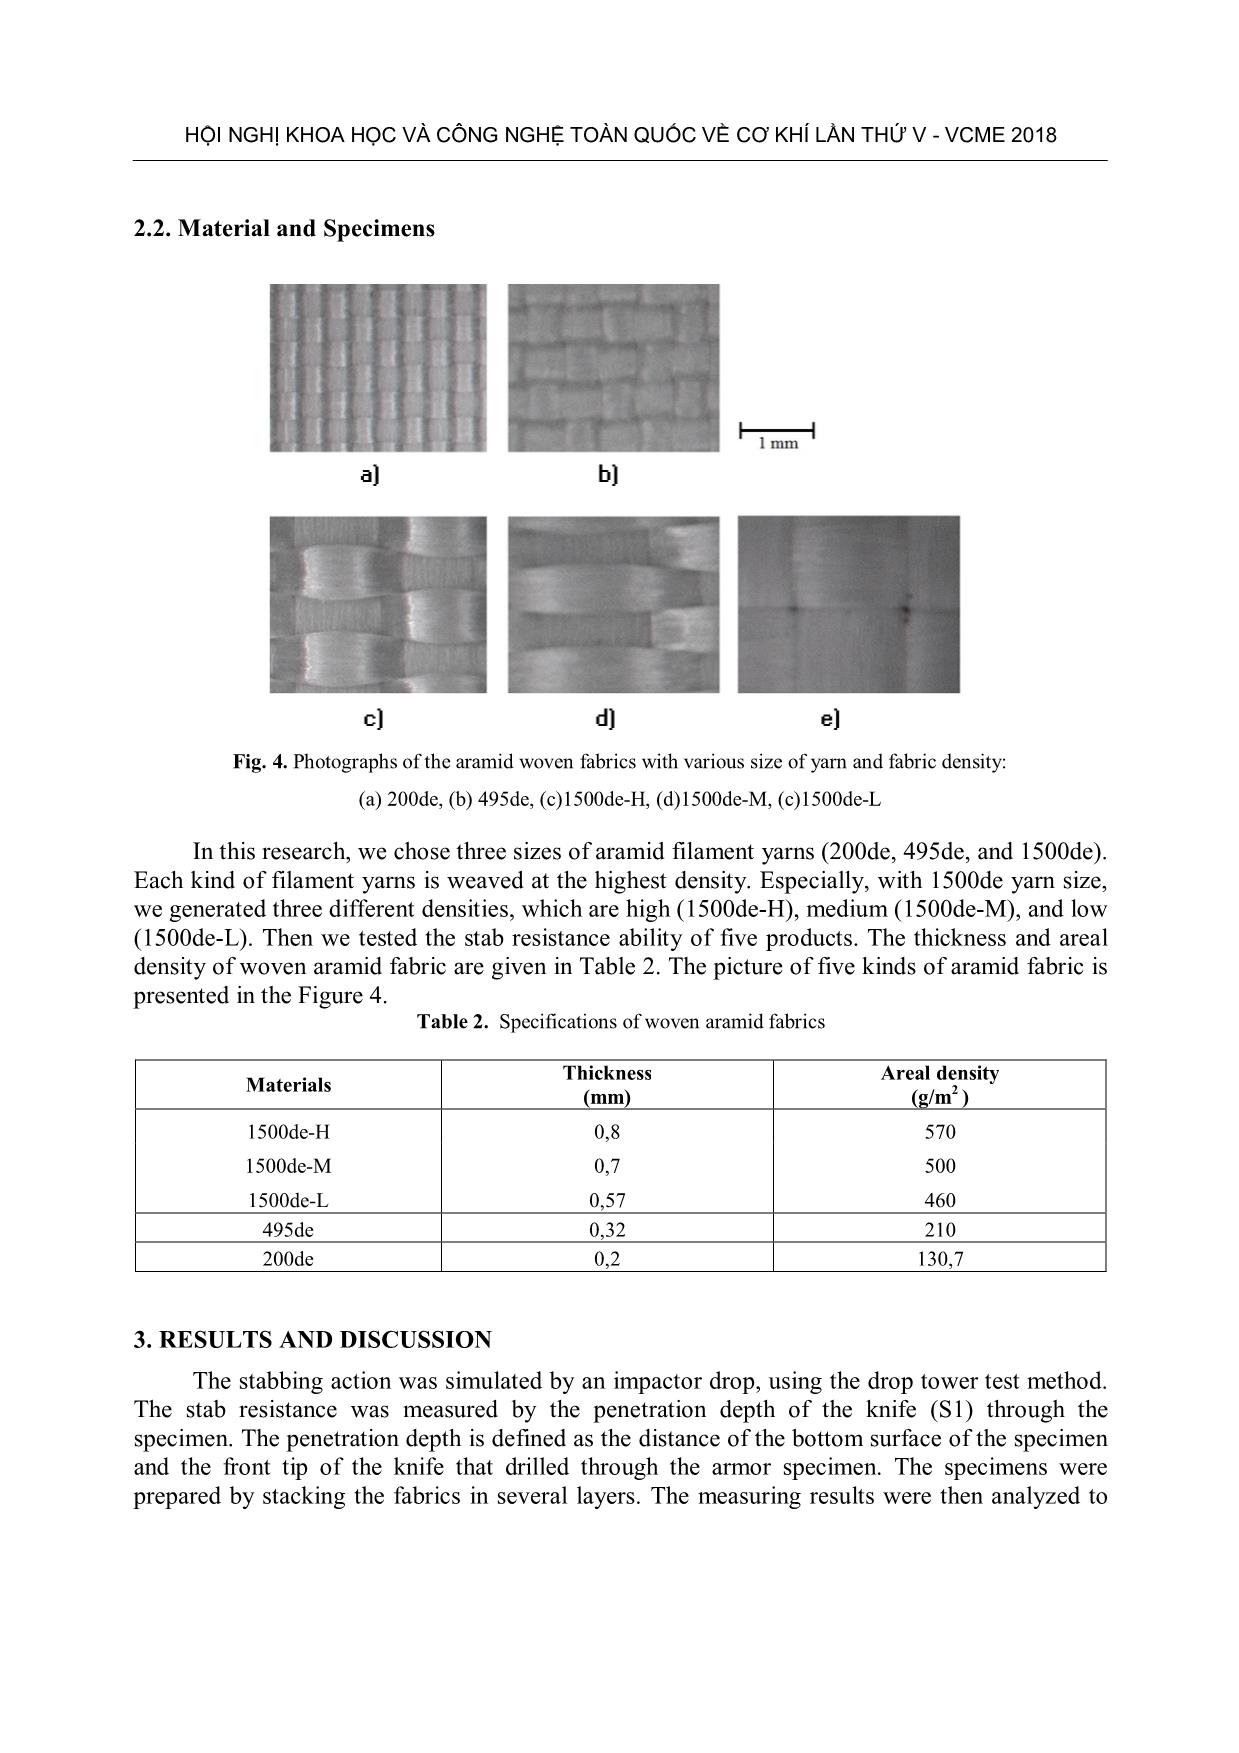 Tính chất chống đâm xuyên của vải dệt dùng sợi liên tục Aramid trang 5